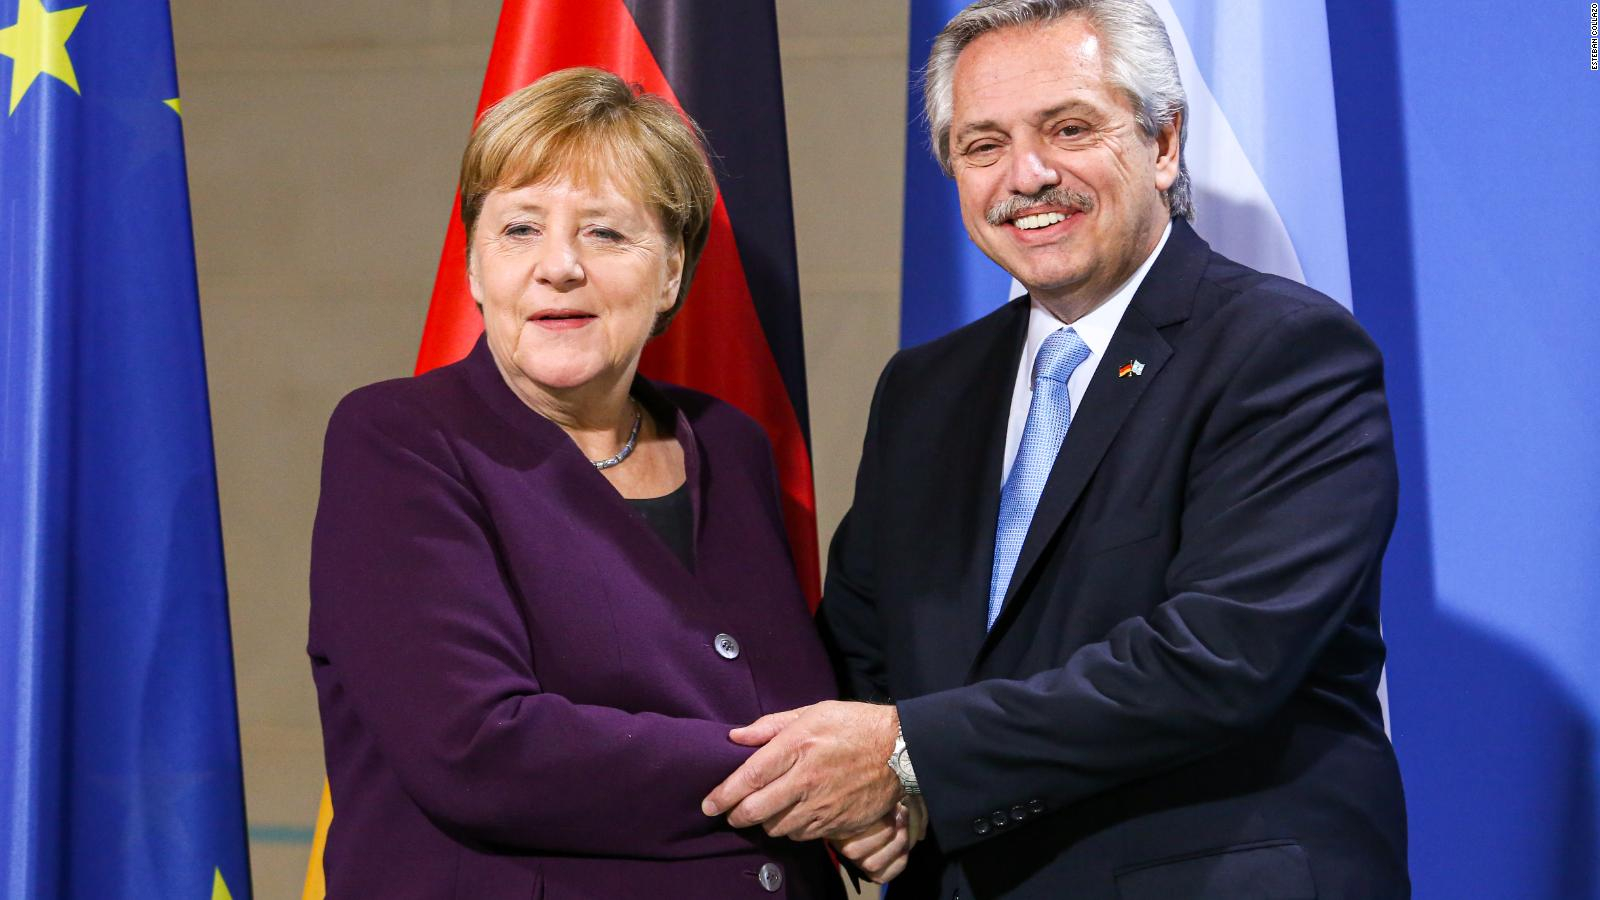 El Presidente dialogó con Ángela Merkel hablaron de deuda y coronavirus